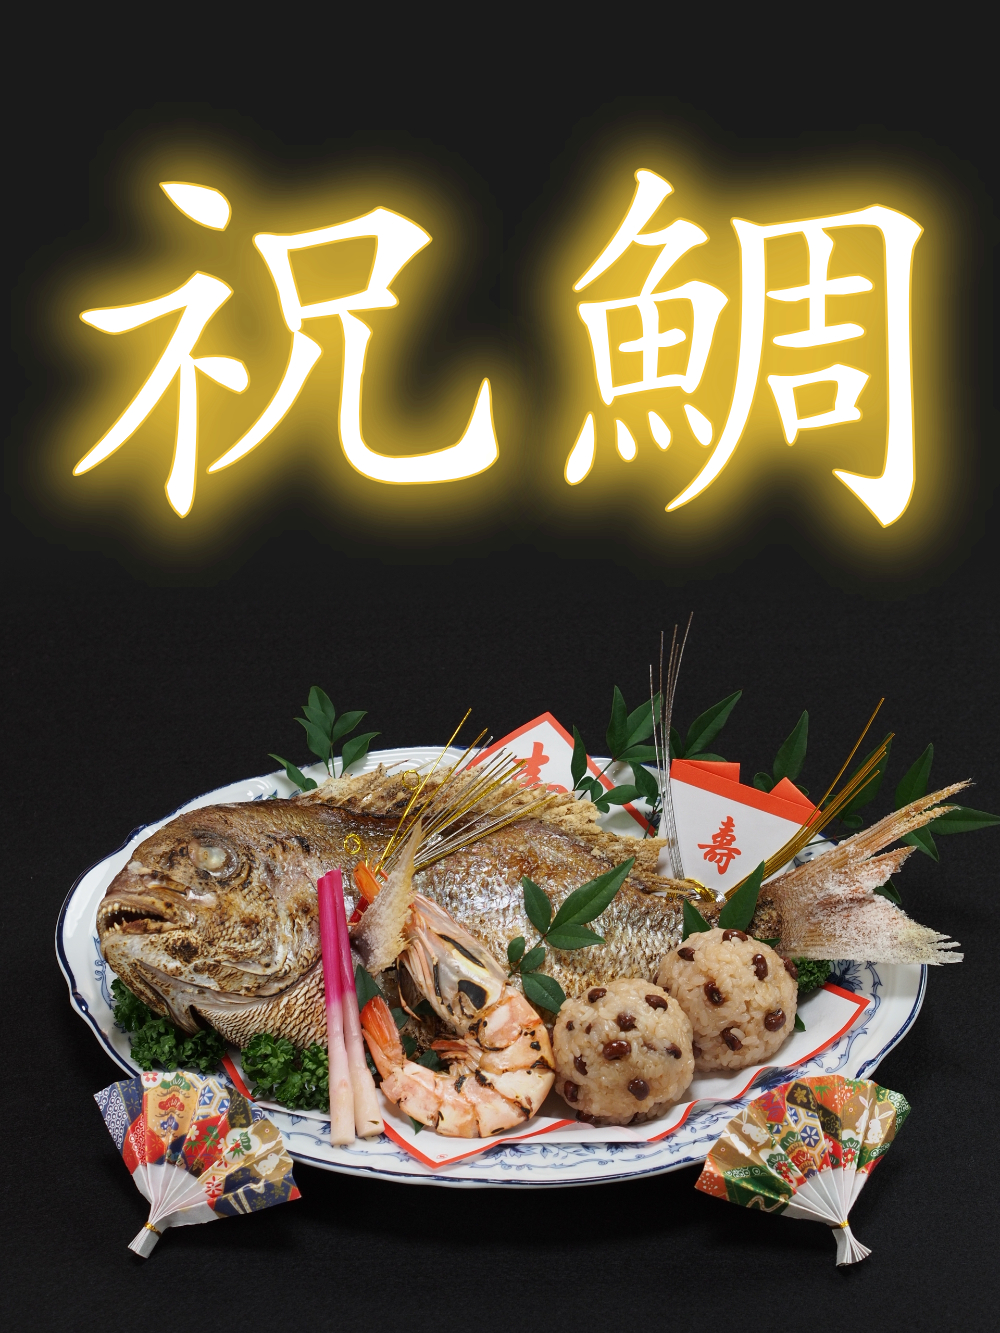 【祝鯛】武蔵関へお祝い料理の宅配